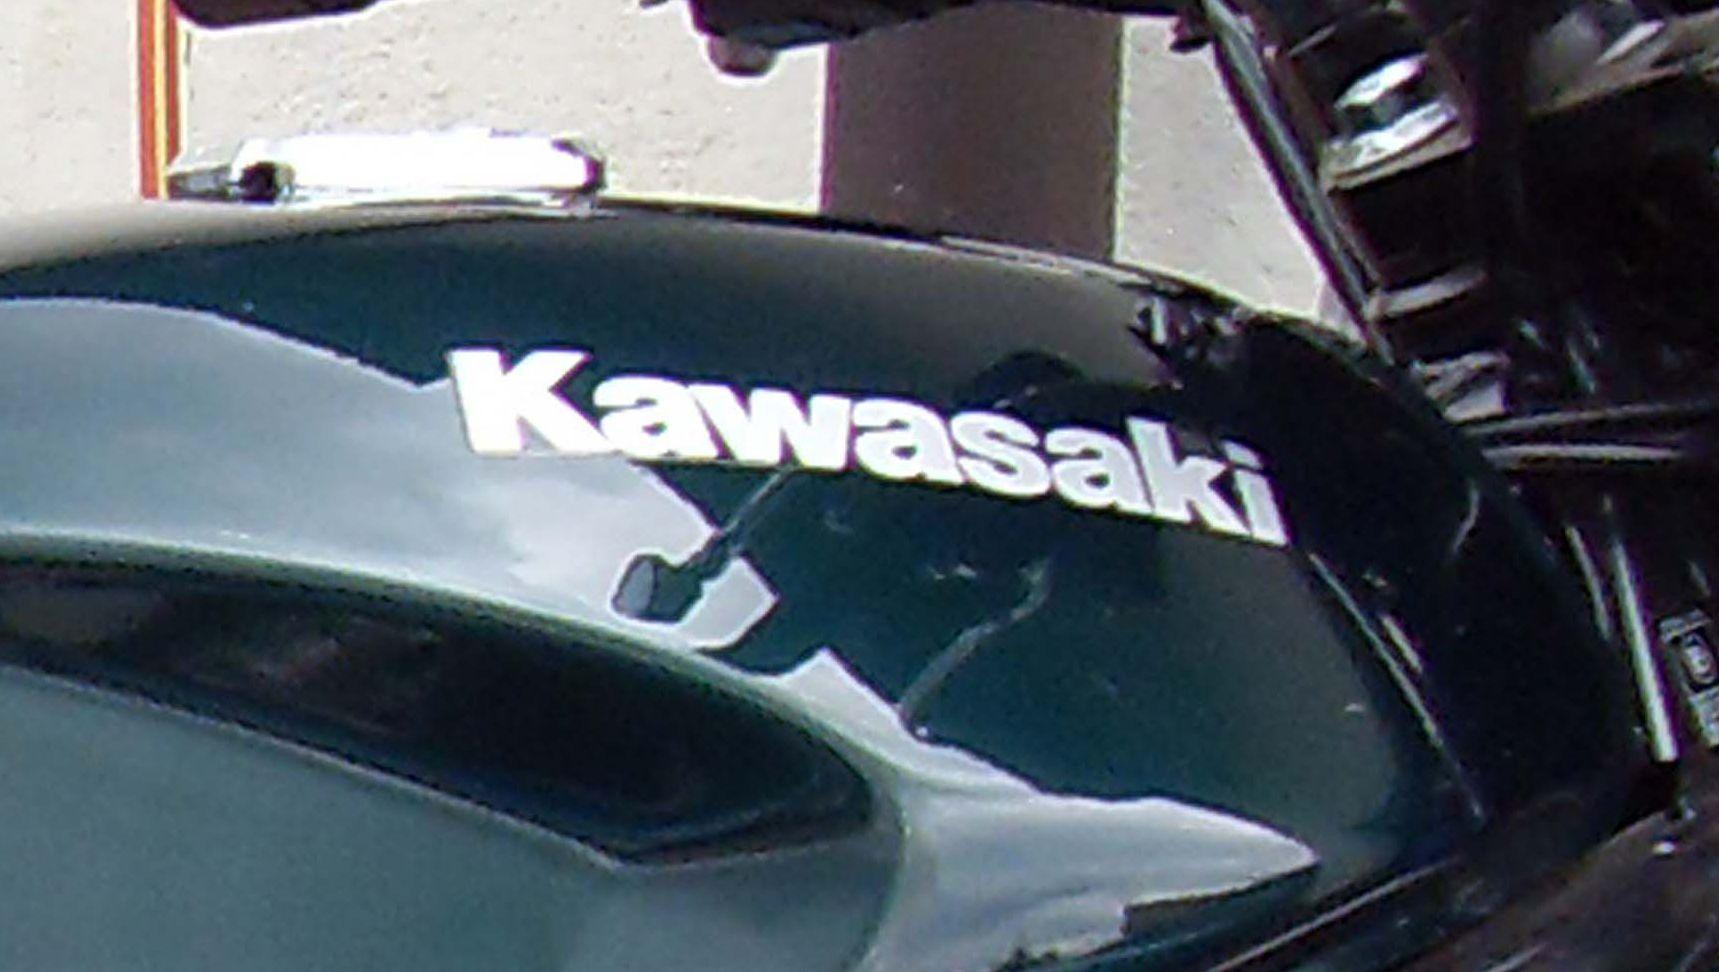 Kawasaki Motorcycle Logo - Kawasaki logo. Motorcycle brands: logo, specs, history